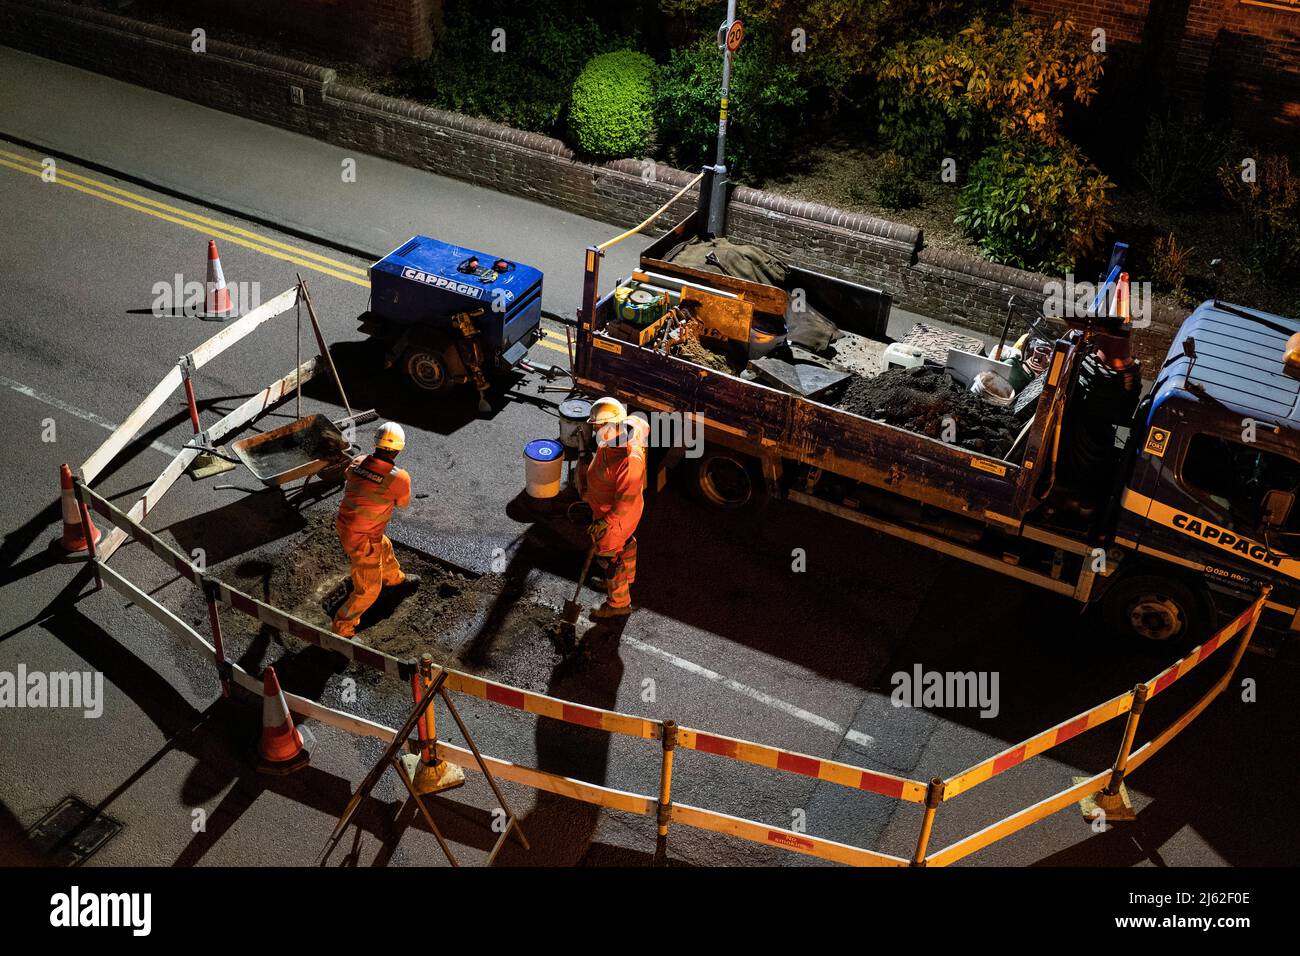 Lavori stradali notturni, riparando una copertura di botola rotta nella strada, in Hertfordshire, Regno Unito. Lavori eseguiti da fornitori Cappagh, per conto di Thames Water. Foto: David Levenson/Alamy Foto Stock